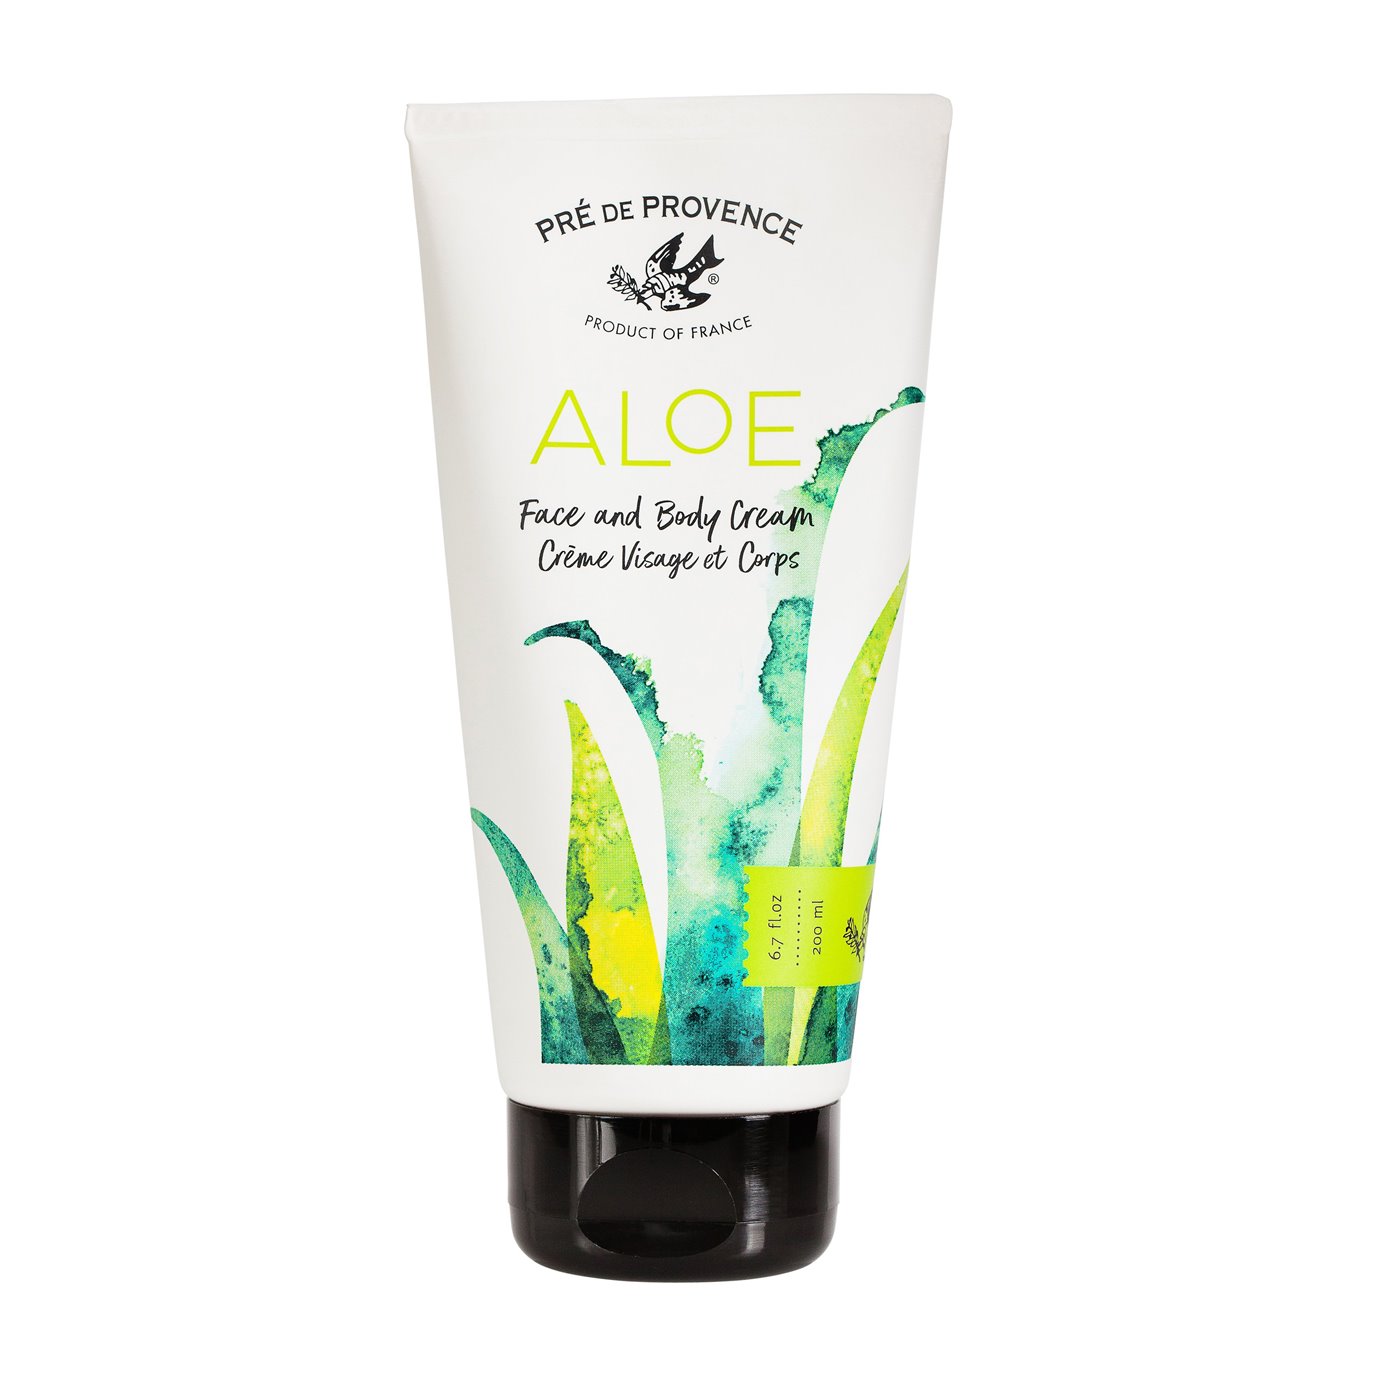 Pre de Provence Aloe Face and Body Cream